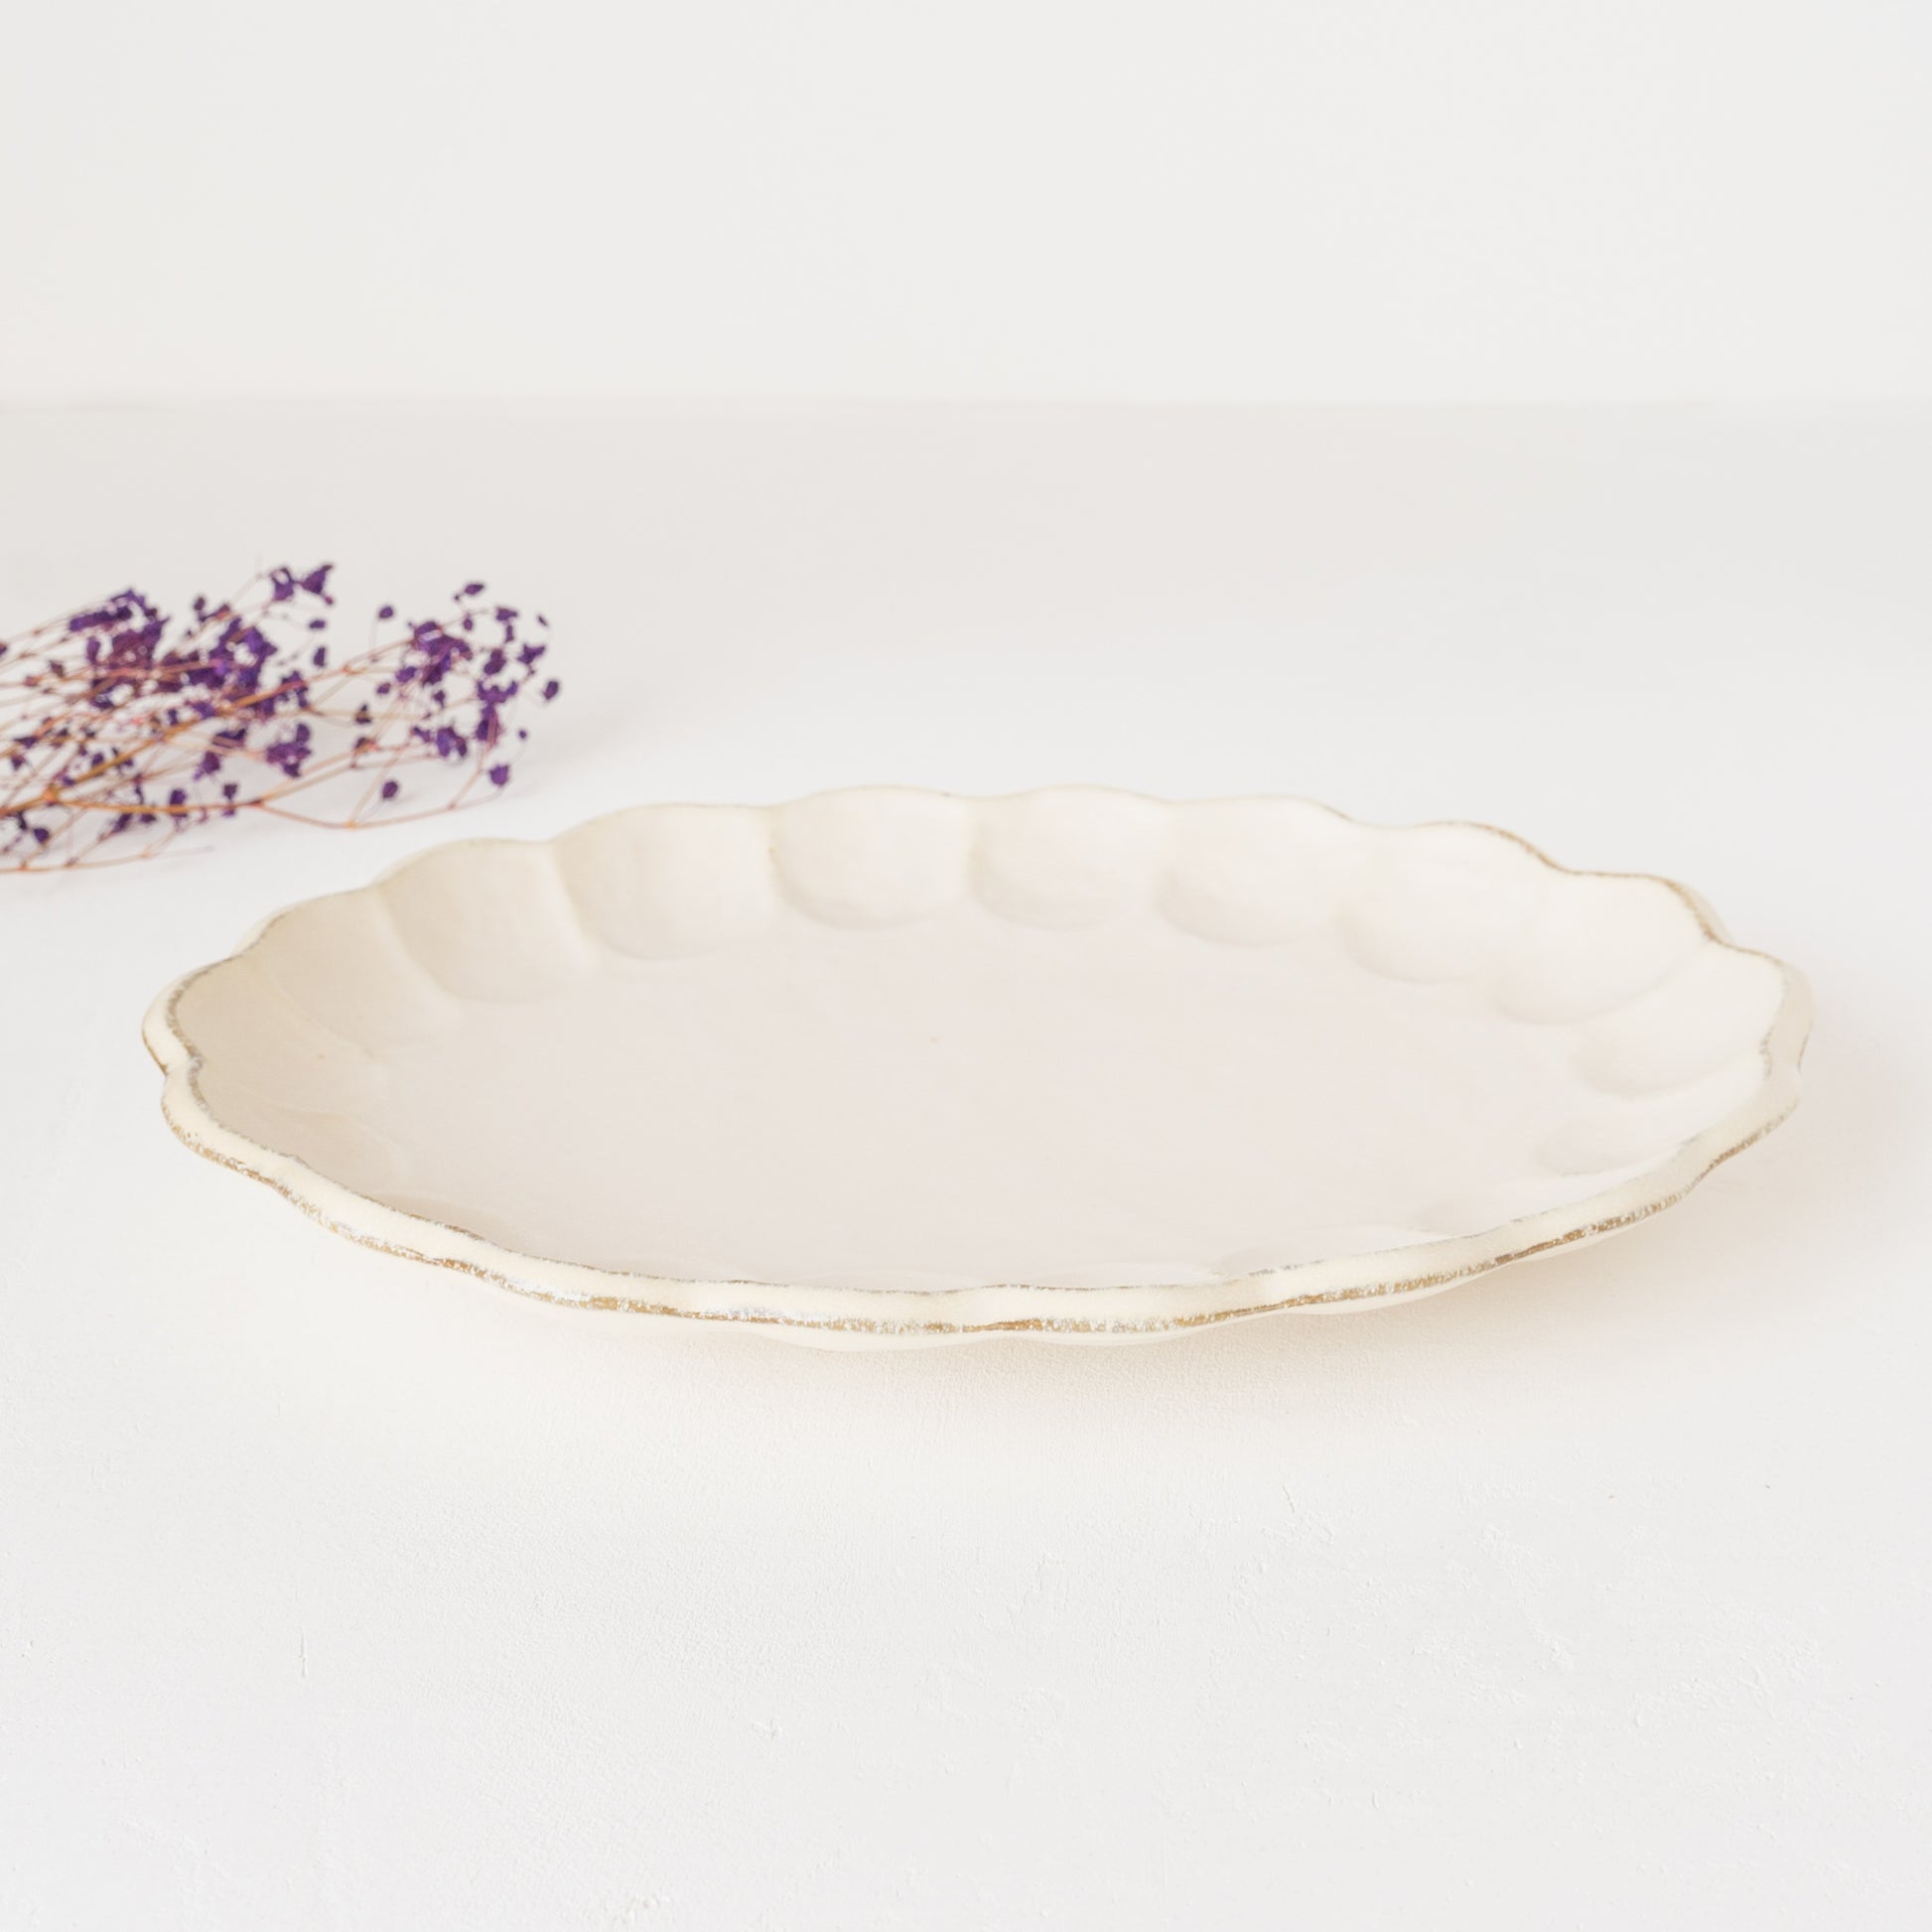 カネコ小兵製陶所の白練リンカオーバル皿